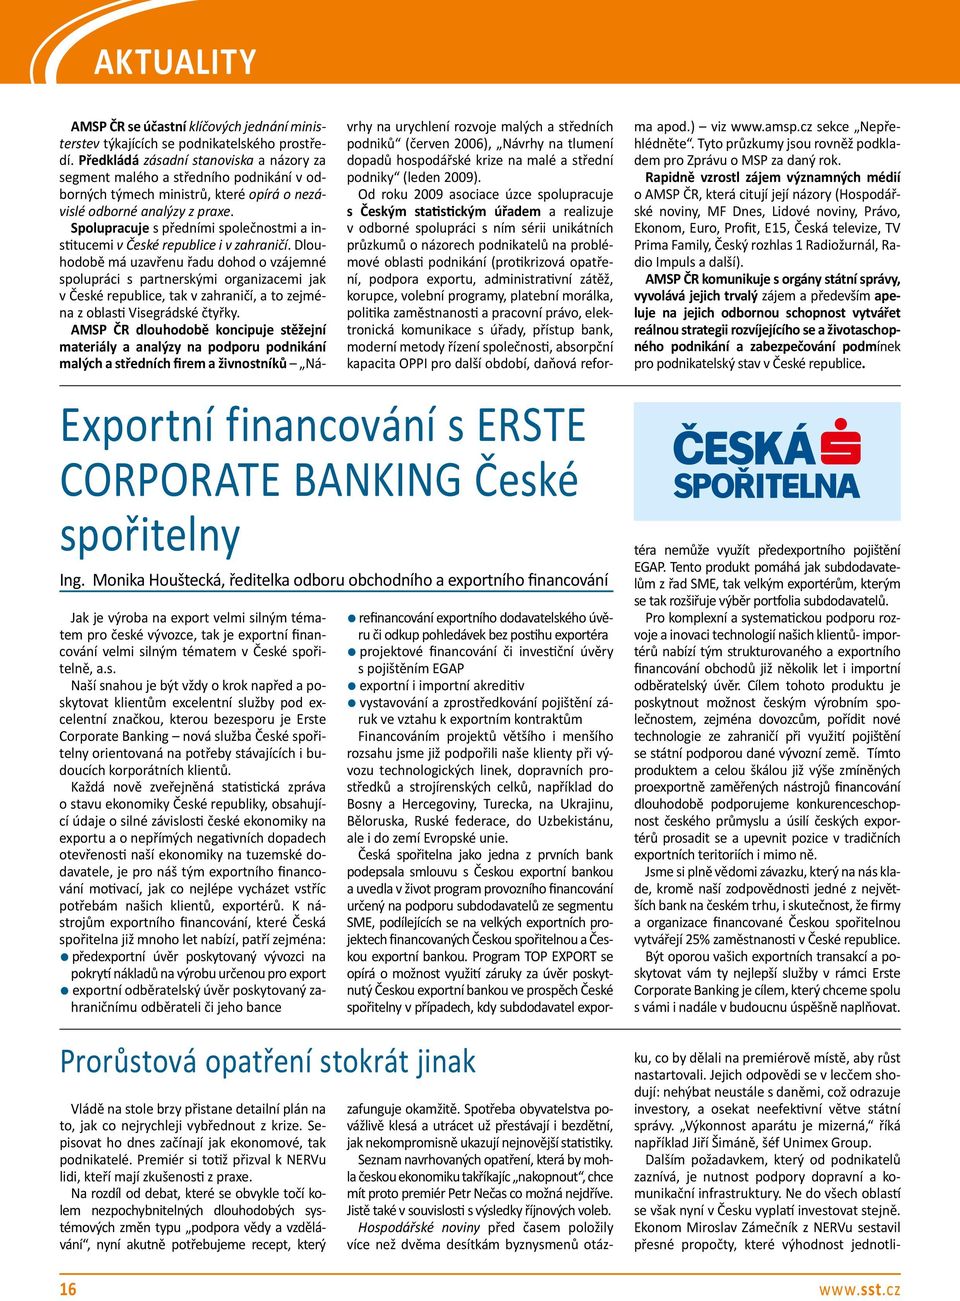 spořitelně, a.s. Naší snahou je být vždy o krok napřed a poskytovat klientům excelentní služby pod excelentní značkou, kterou bezesporu je Erste Corporate Banking nová služba České spořitelny